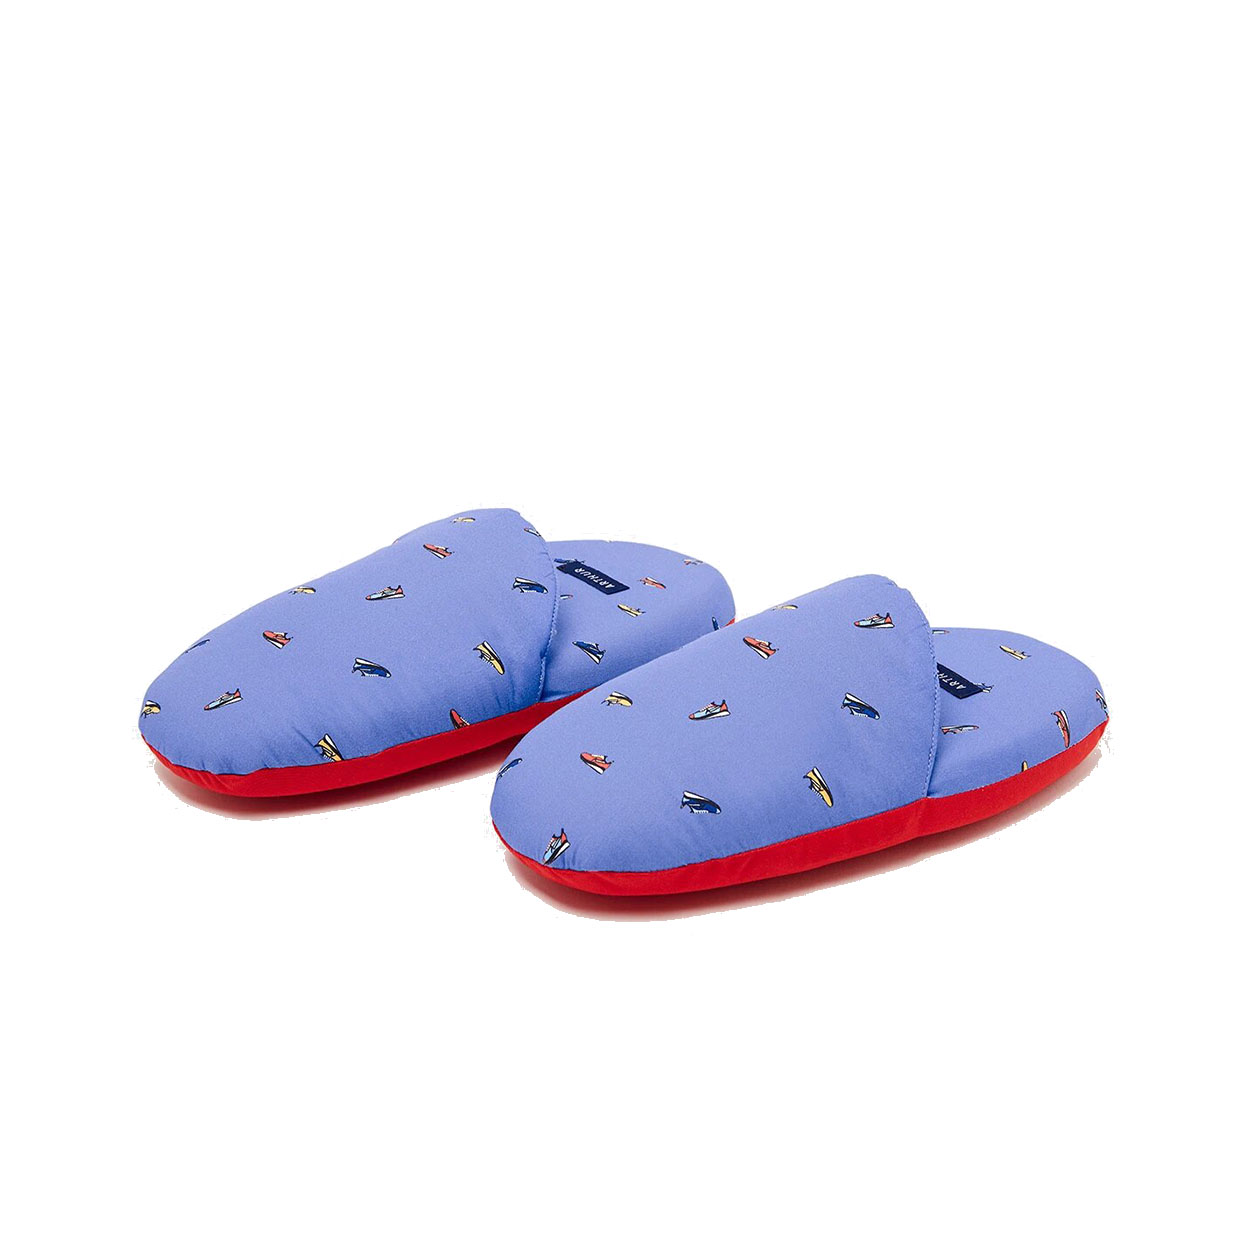 Chaussons Arthur Sneaker en coton bleu roi à motifs baskets et semelle rouge